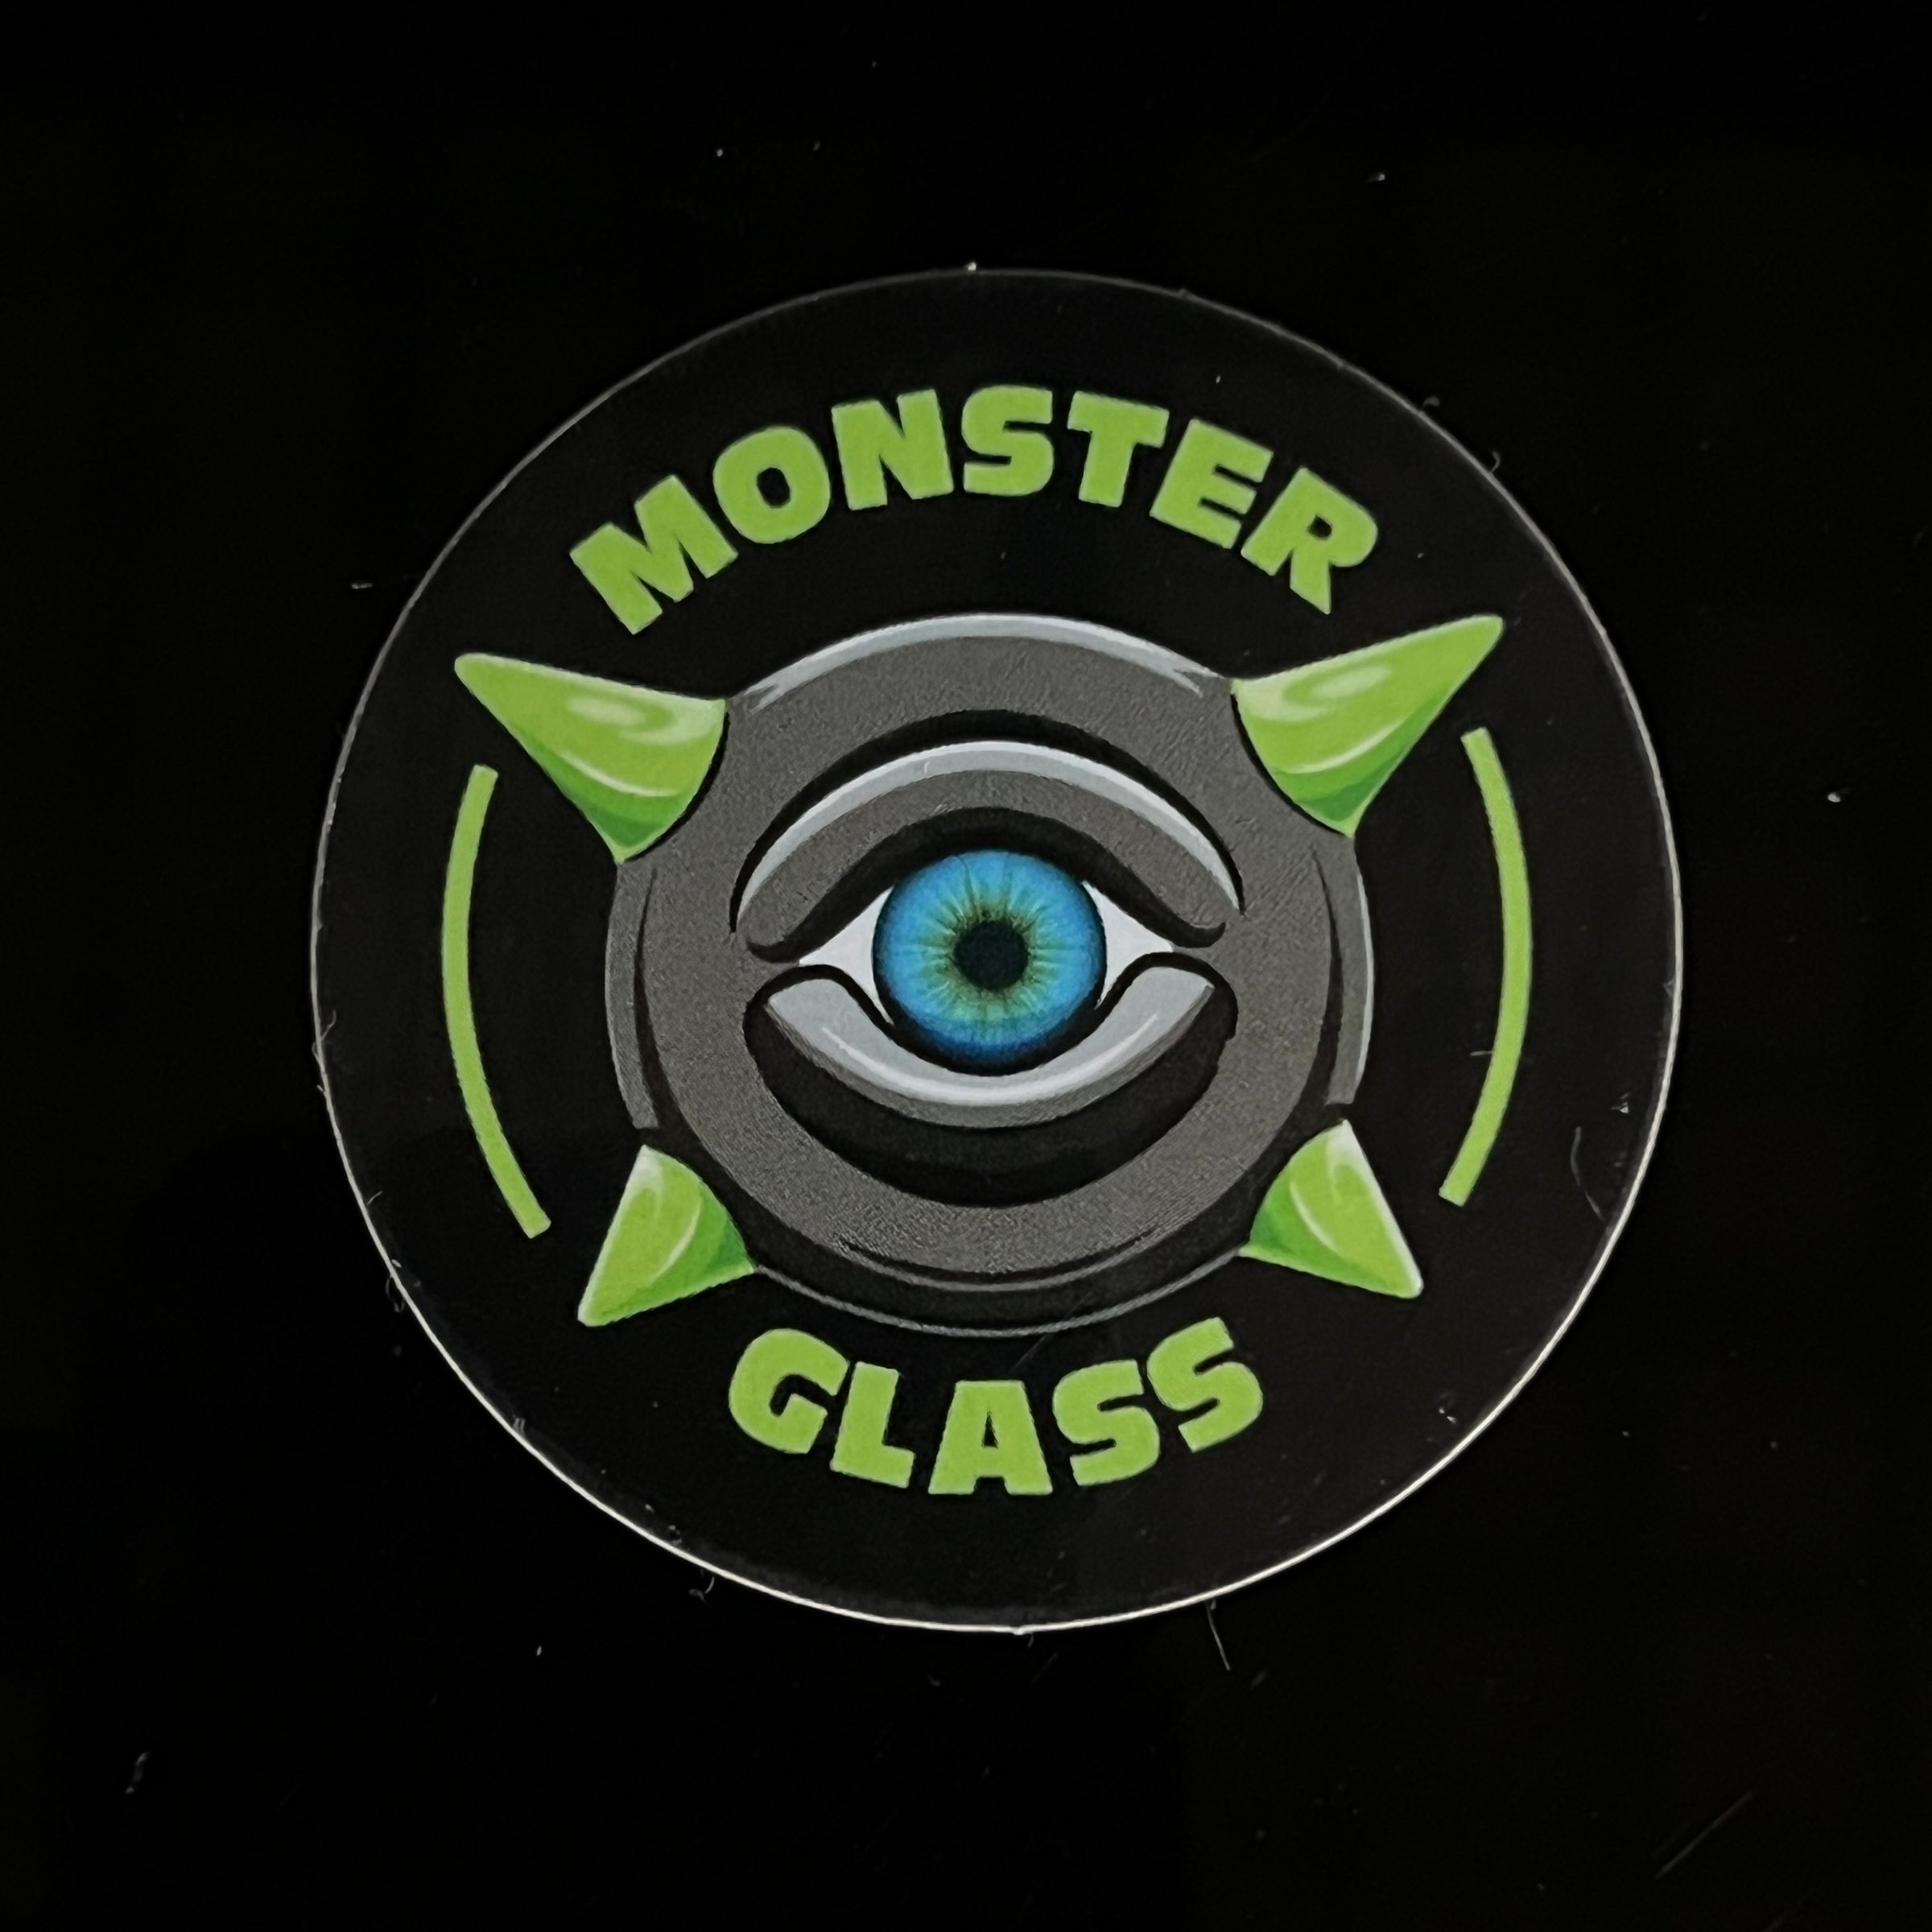 Monster Glass